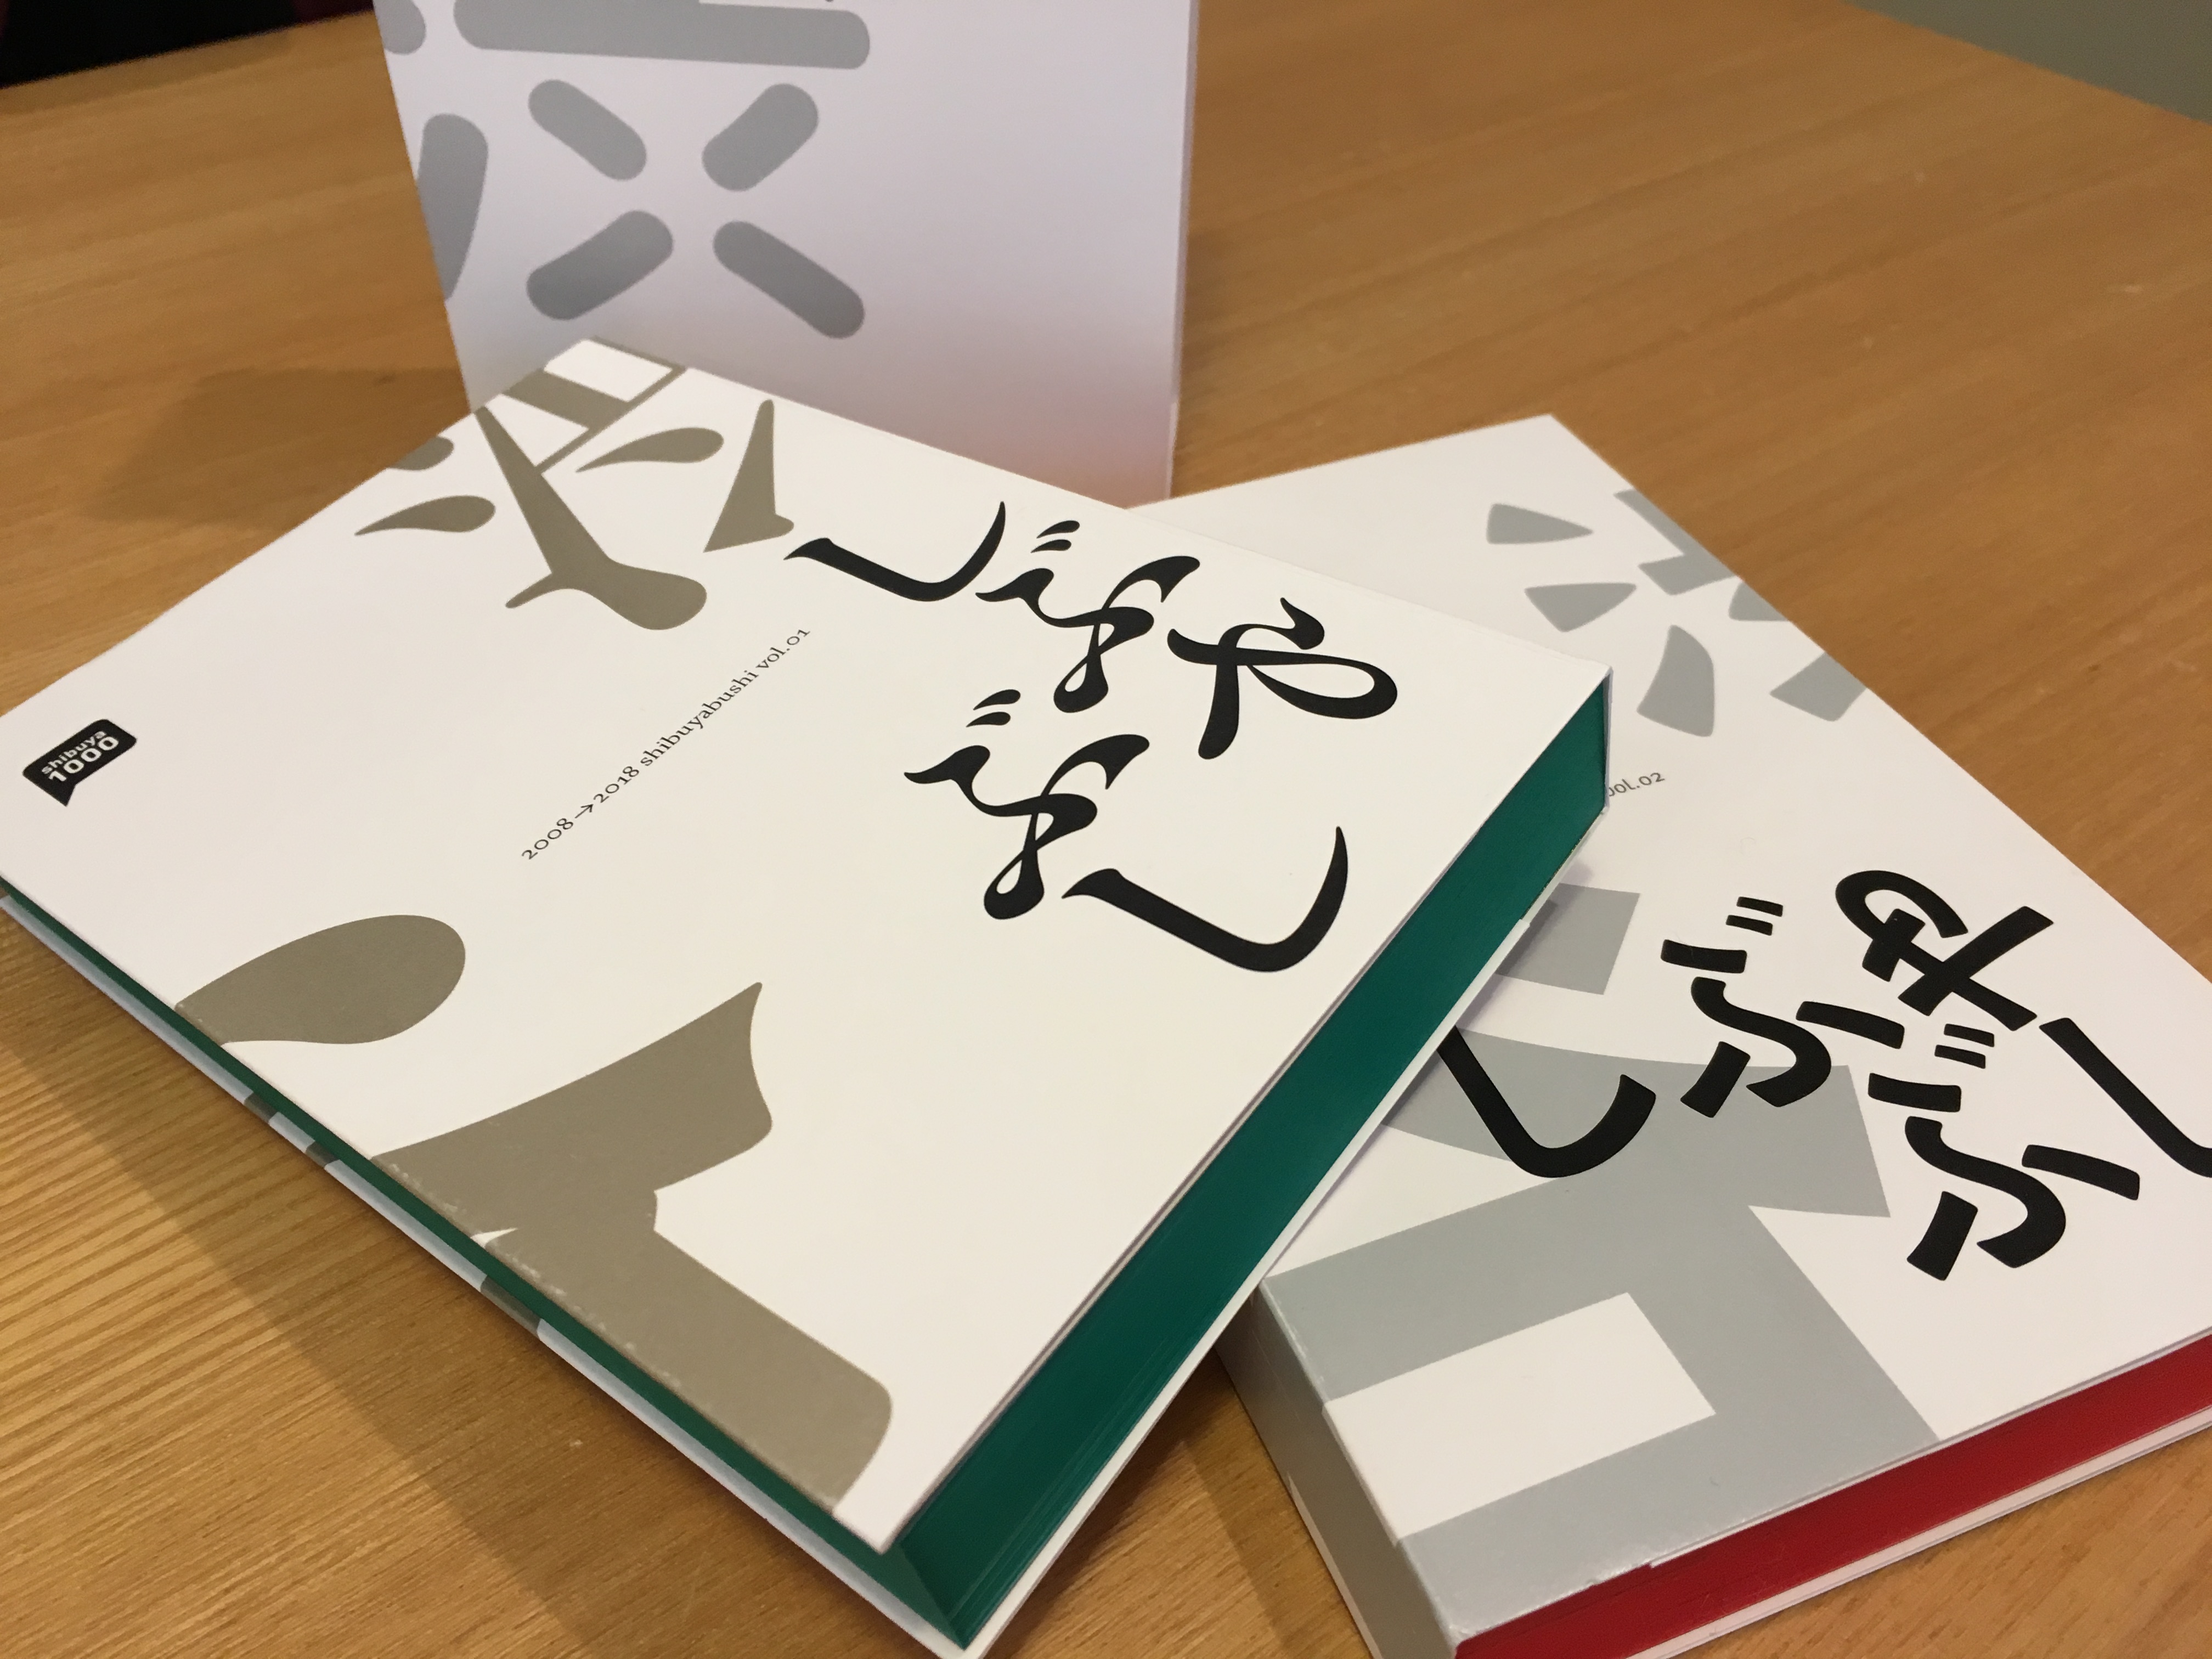 Shibuya1000 Book しぶやぶし 出版記念イベント12 2 月 開催 Shibuya1000実行委員会のプレスリリース